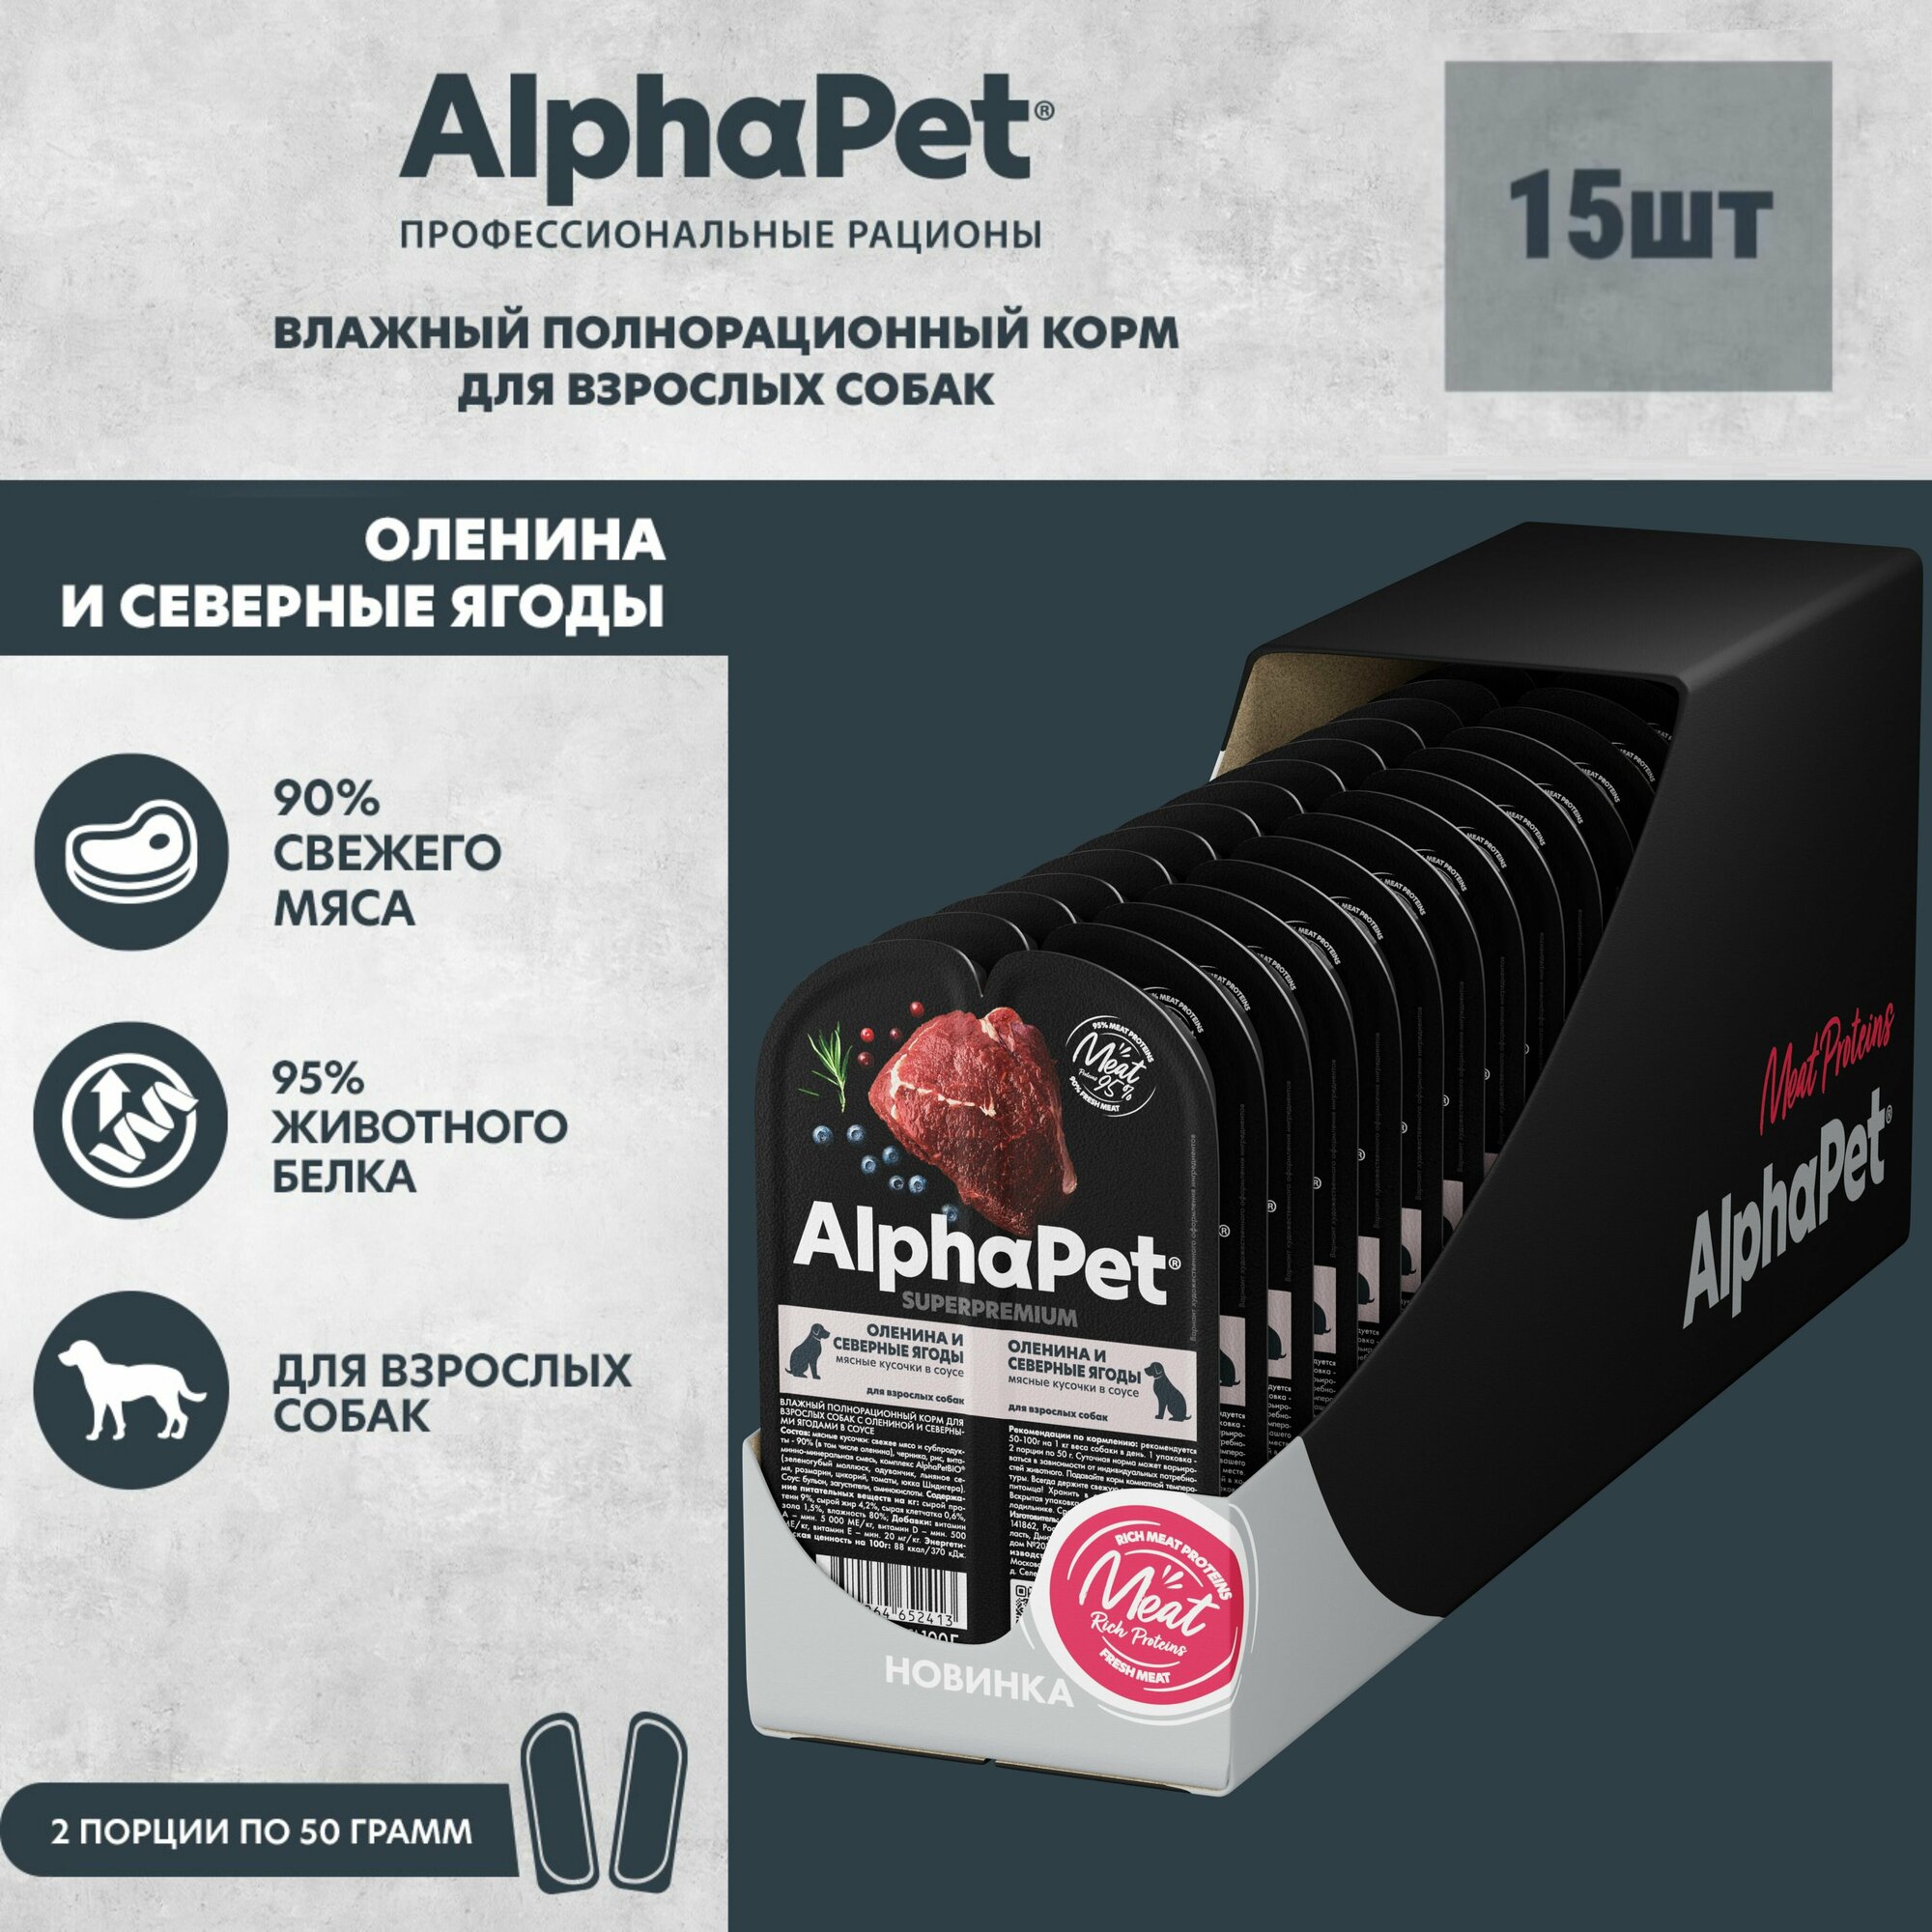 Влажный полнорационный корм для взрослых собак AlphaPet Superpremium, Оленина и северные ягоды мясные кусочки в соусе, 100г *15шт